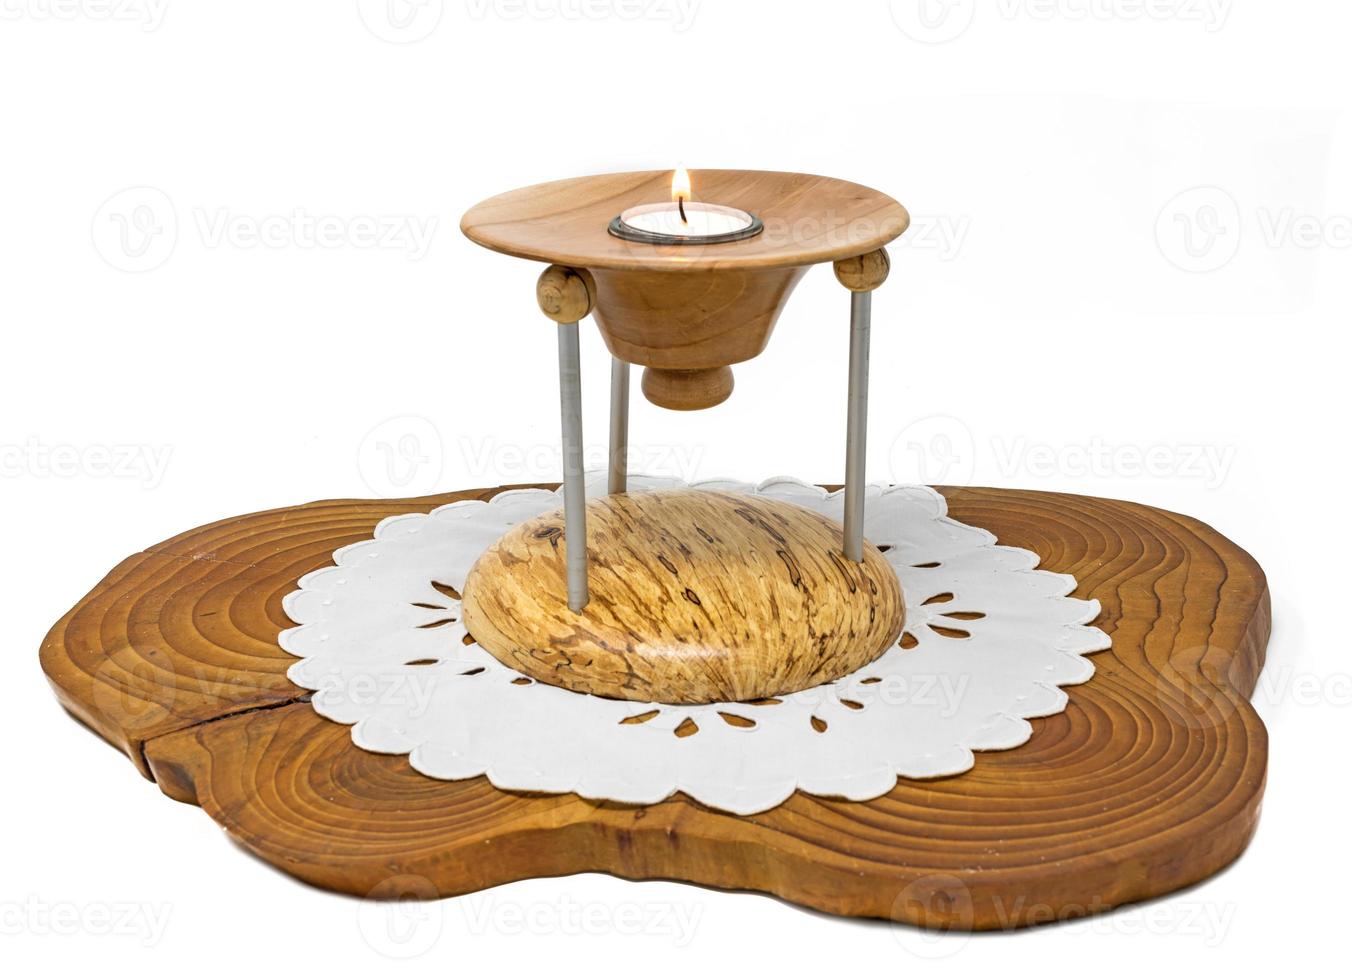 Candelabro de madera de varias partes con velas encendidas se encuentra sobre una tabla de madera oscura. foto